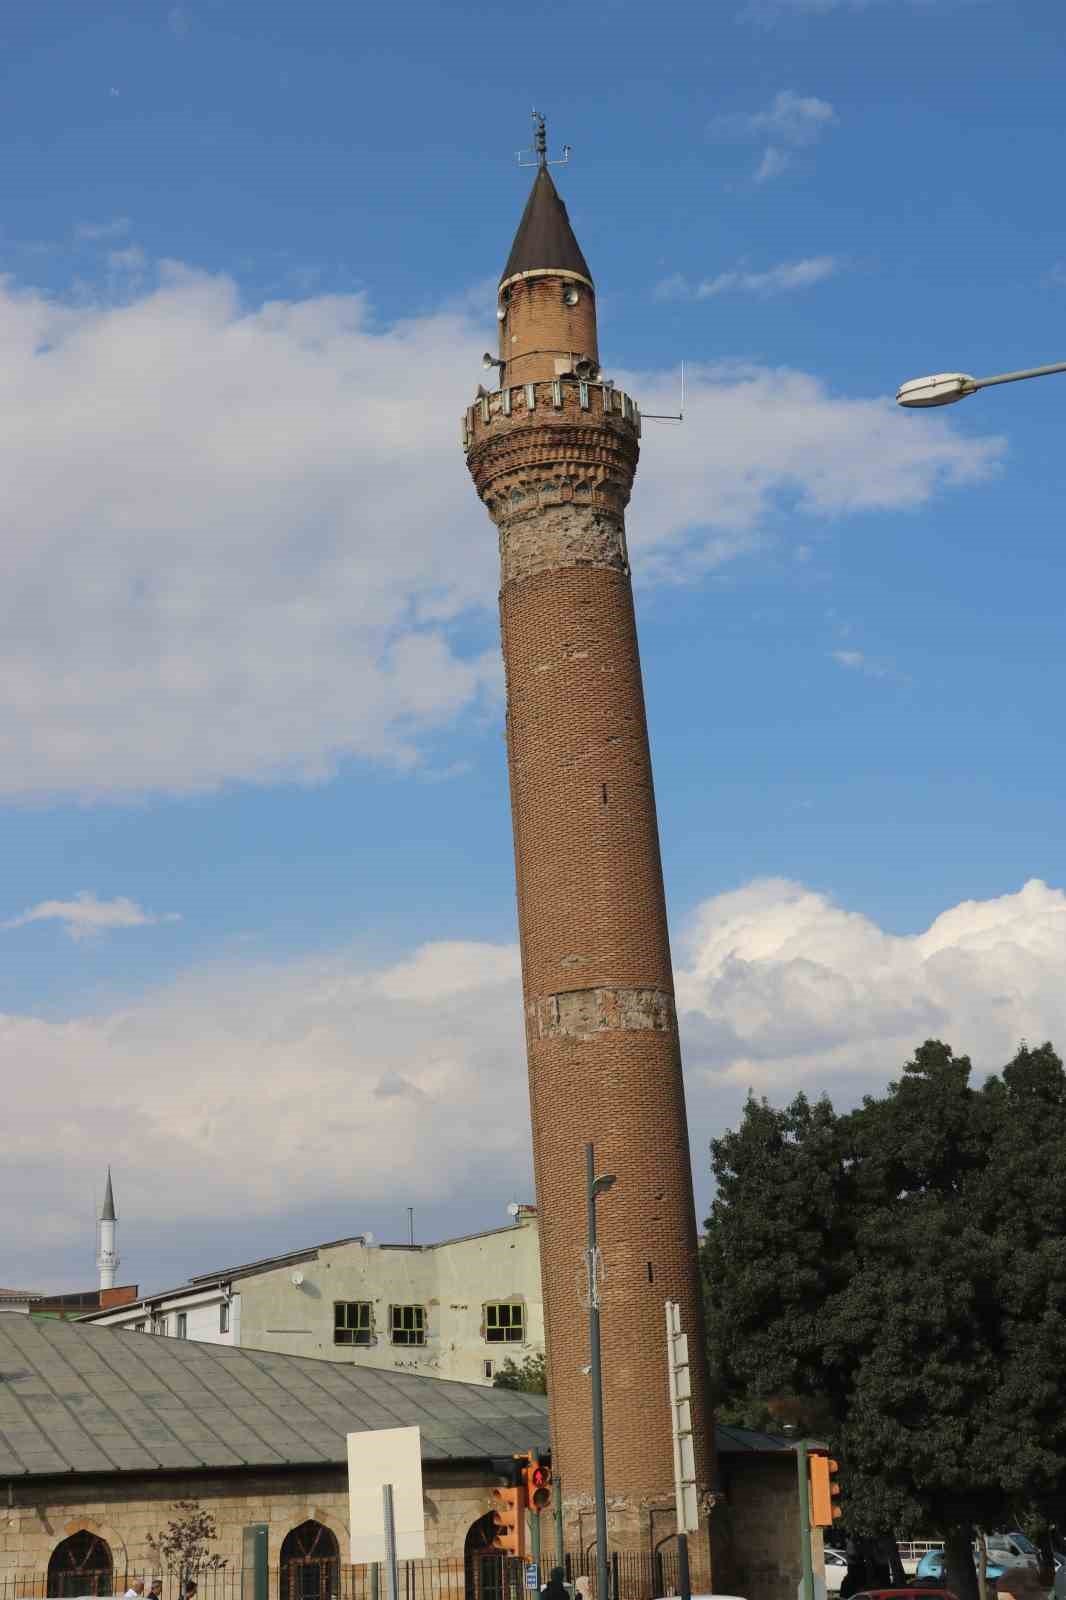 Türk ve İtalyan bilim adamları eğri minare için devrede